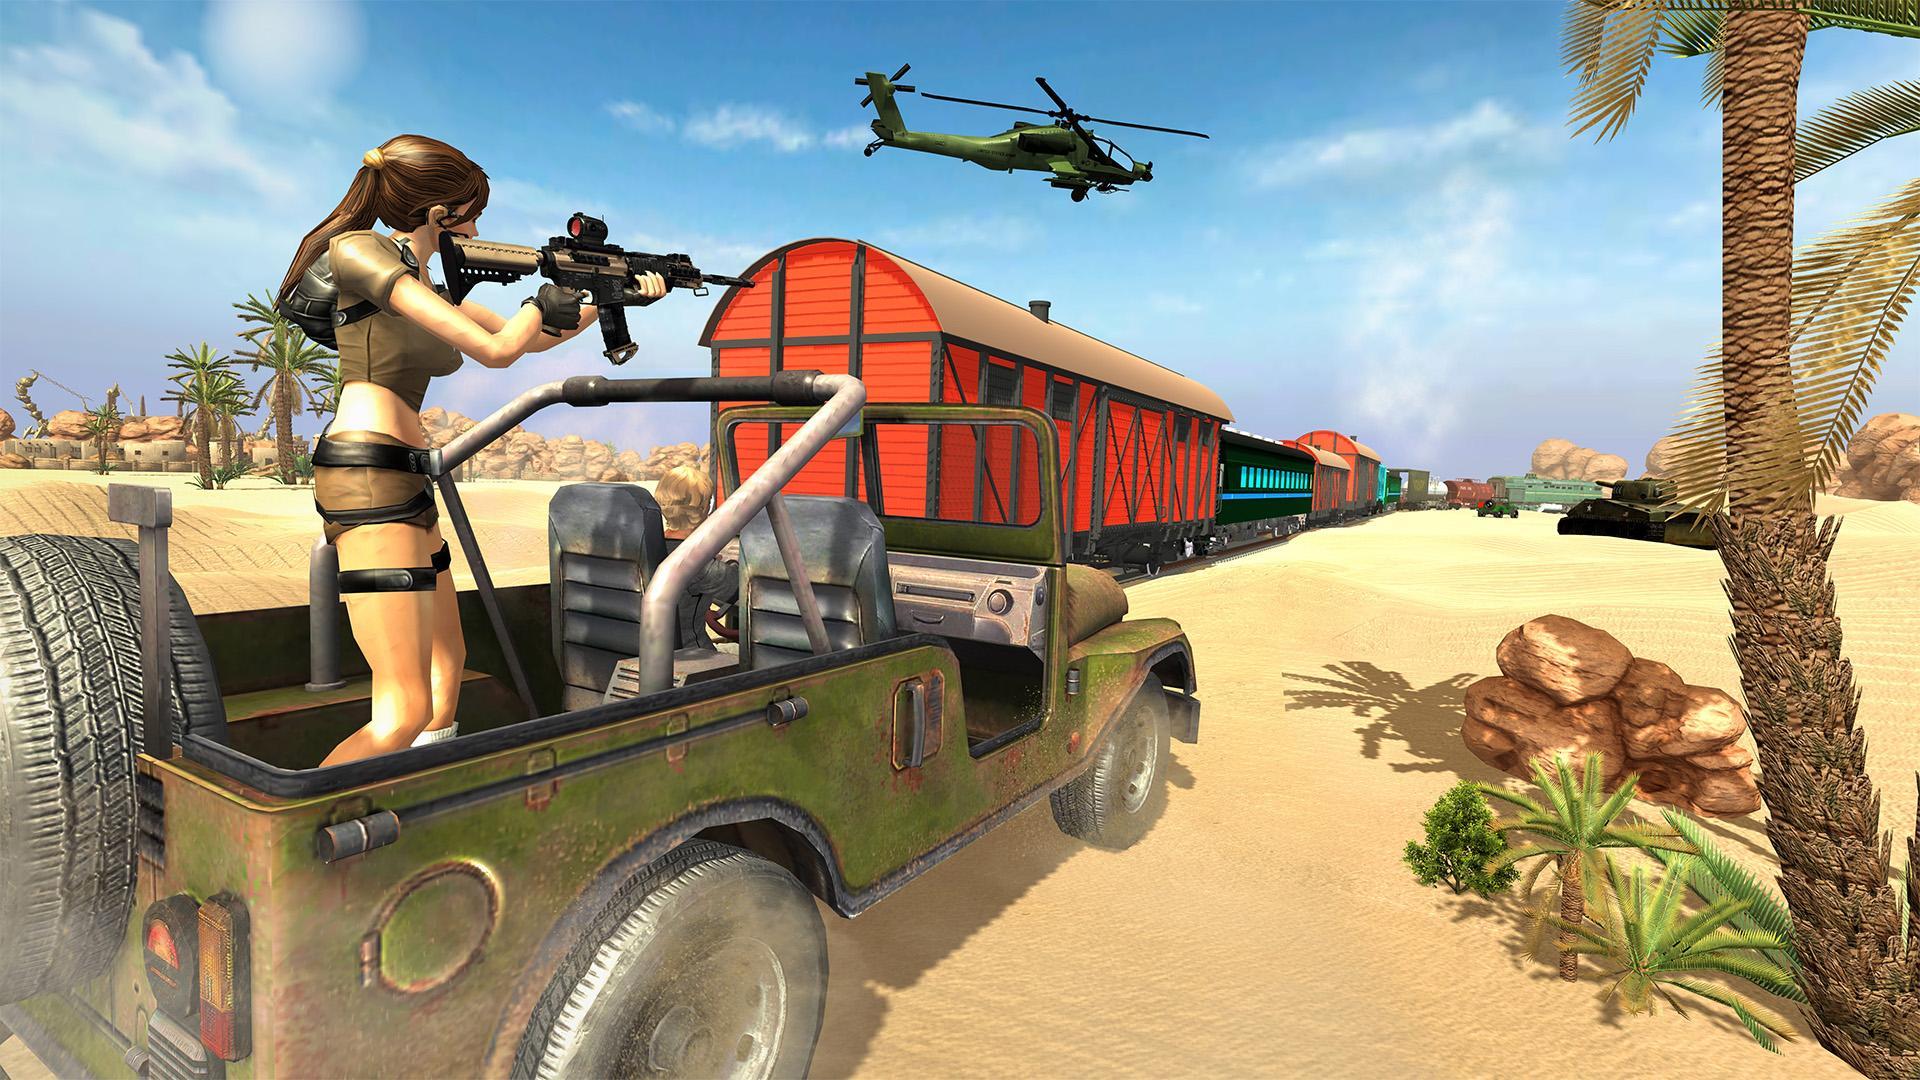 Screenshot 1 of Undercover-Agent: Sniper 3D-Schießspiele 2019 1.47